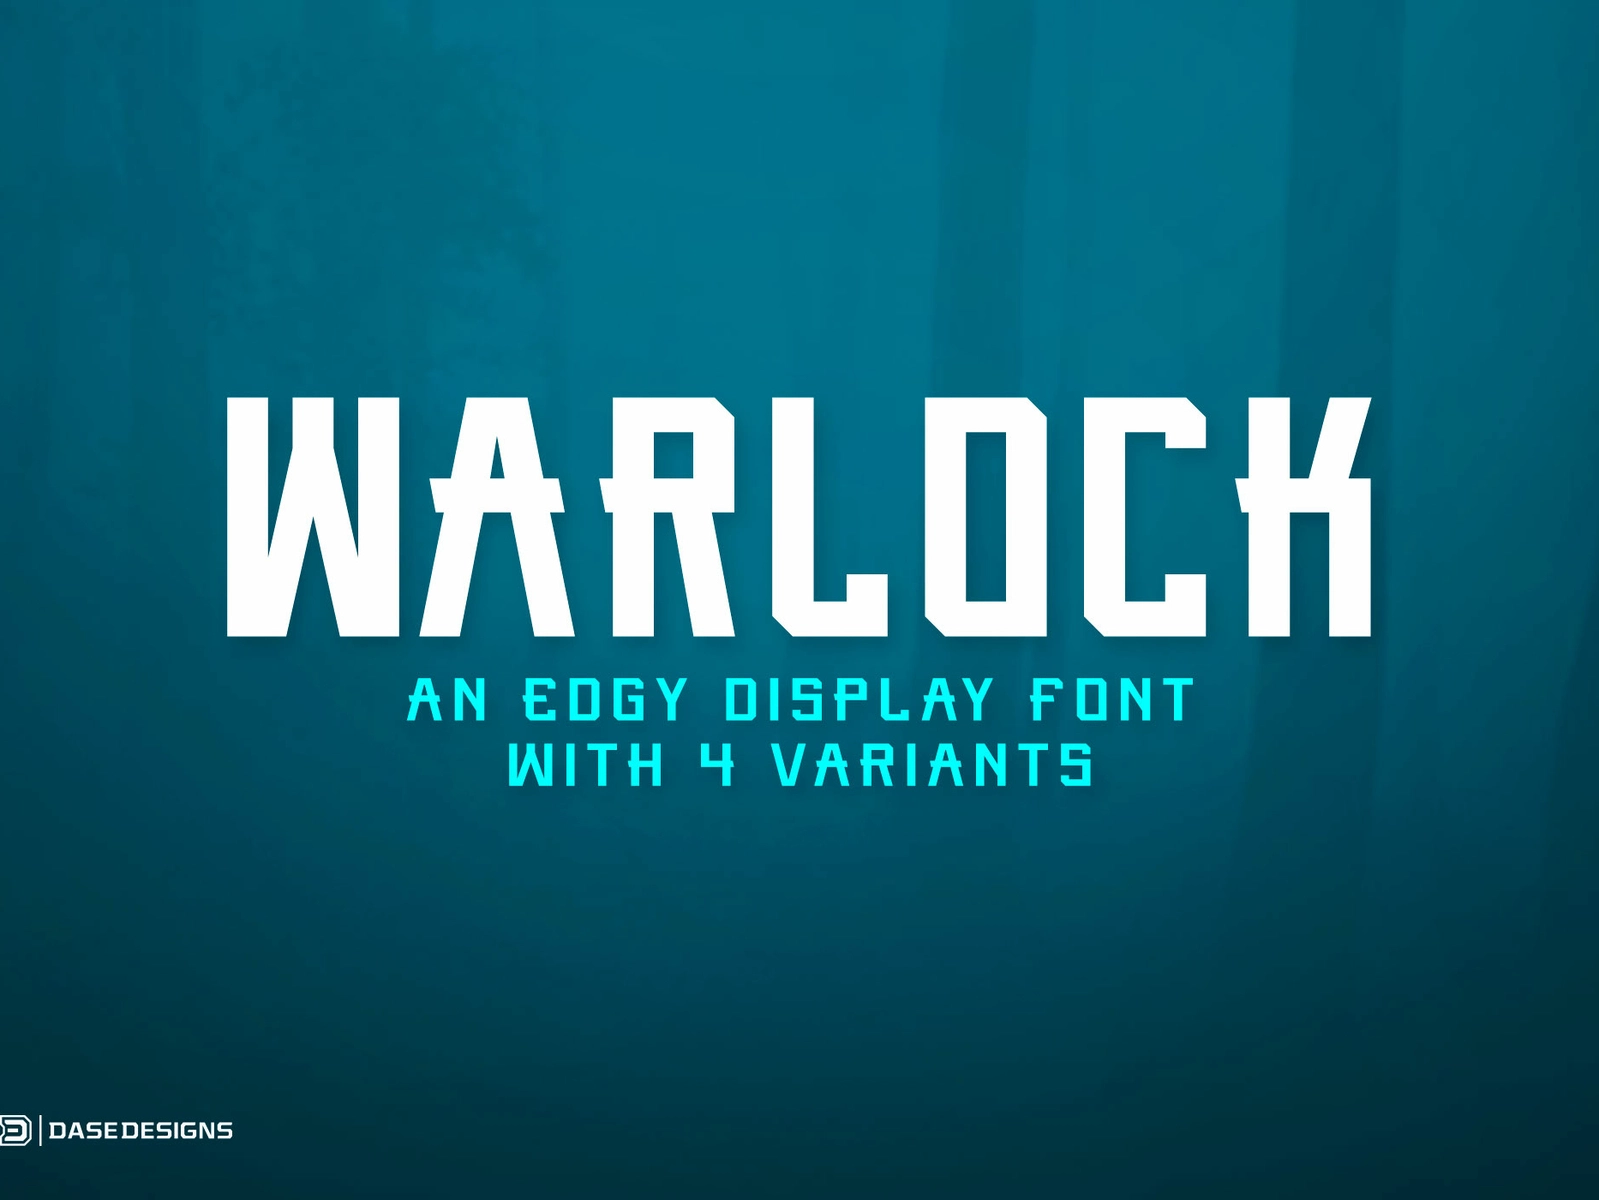 Ejemplo de fuente Warlock